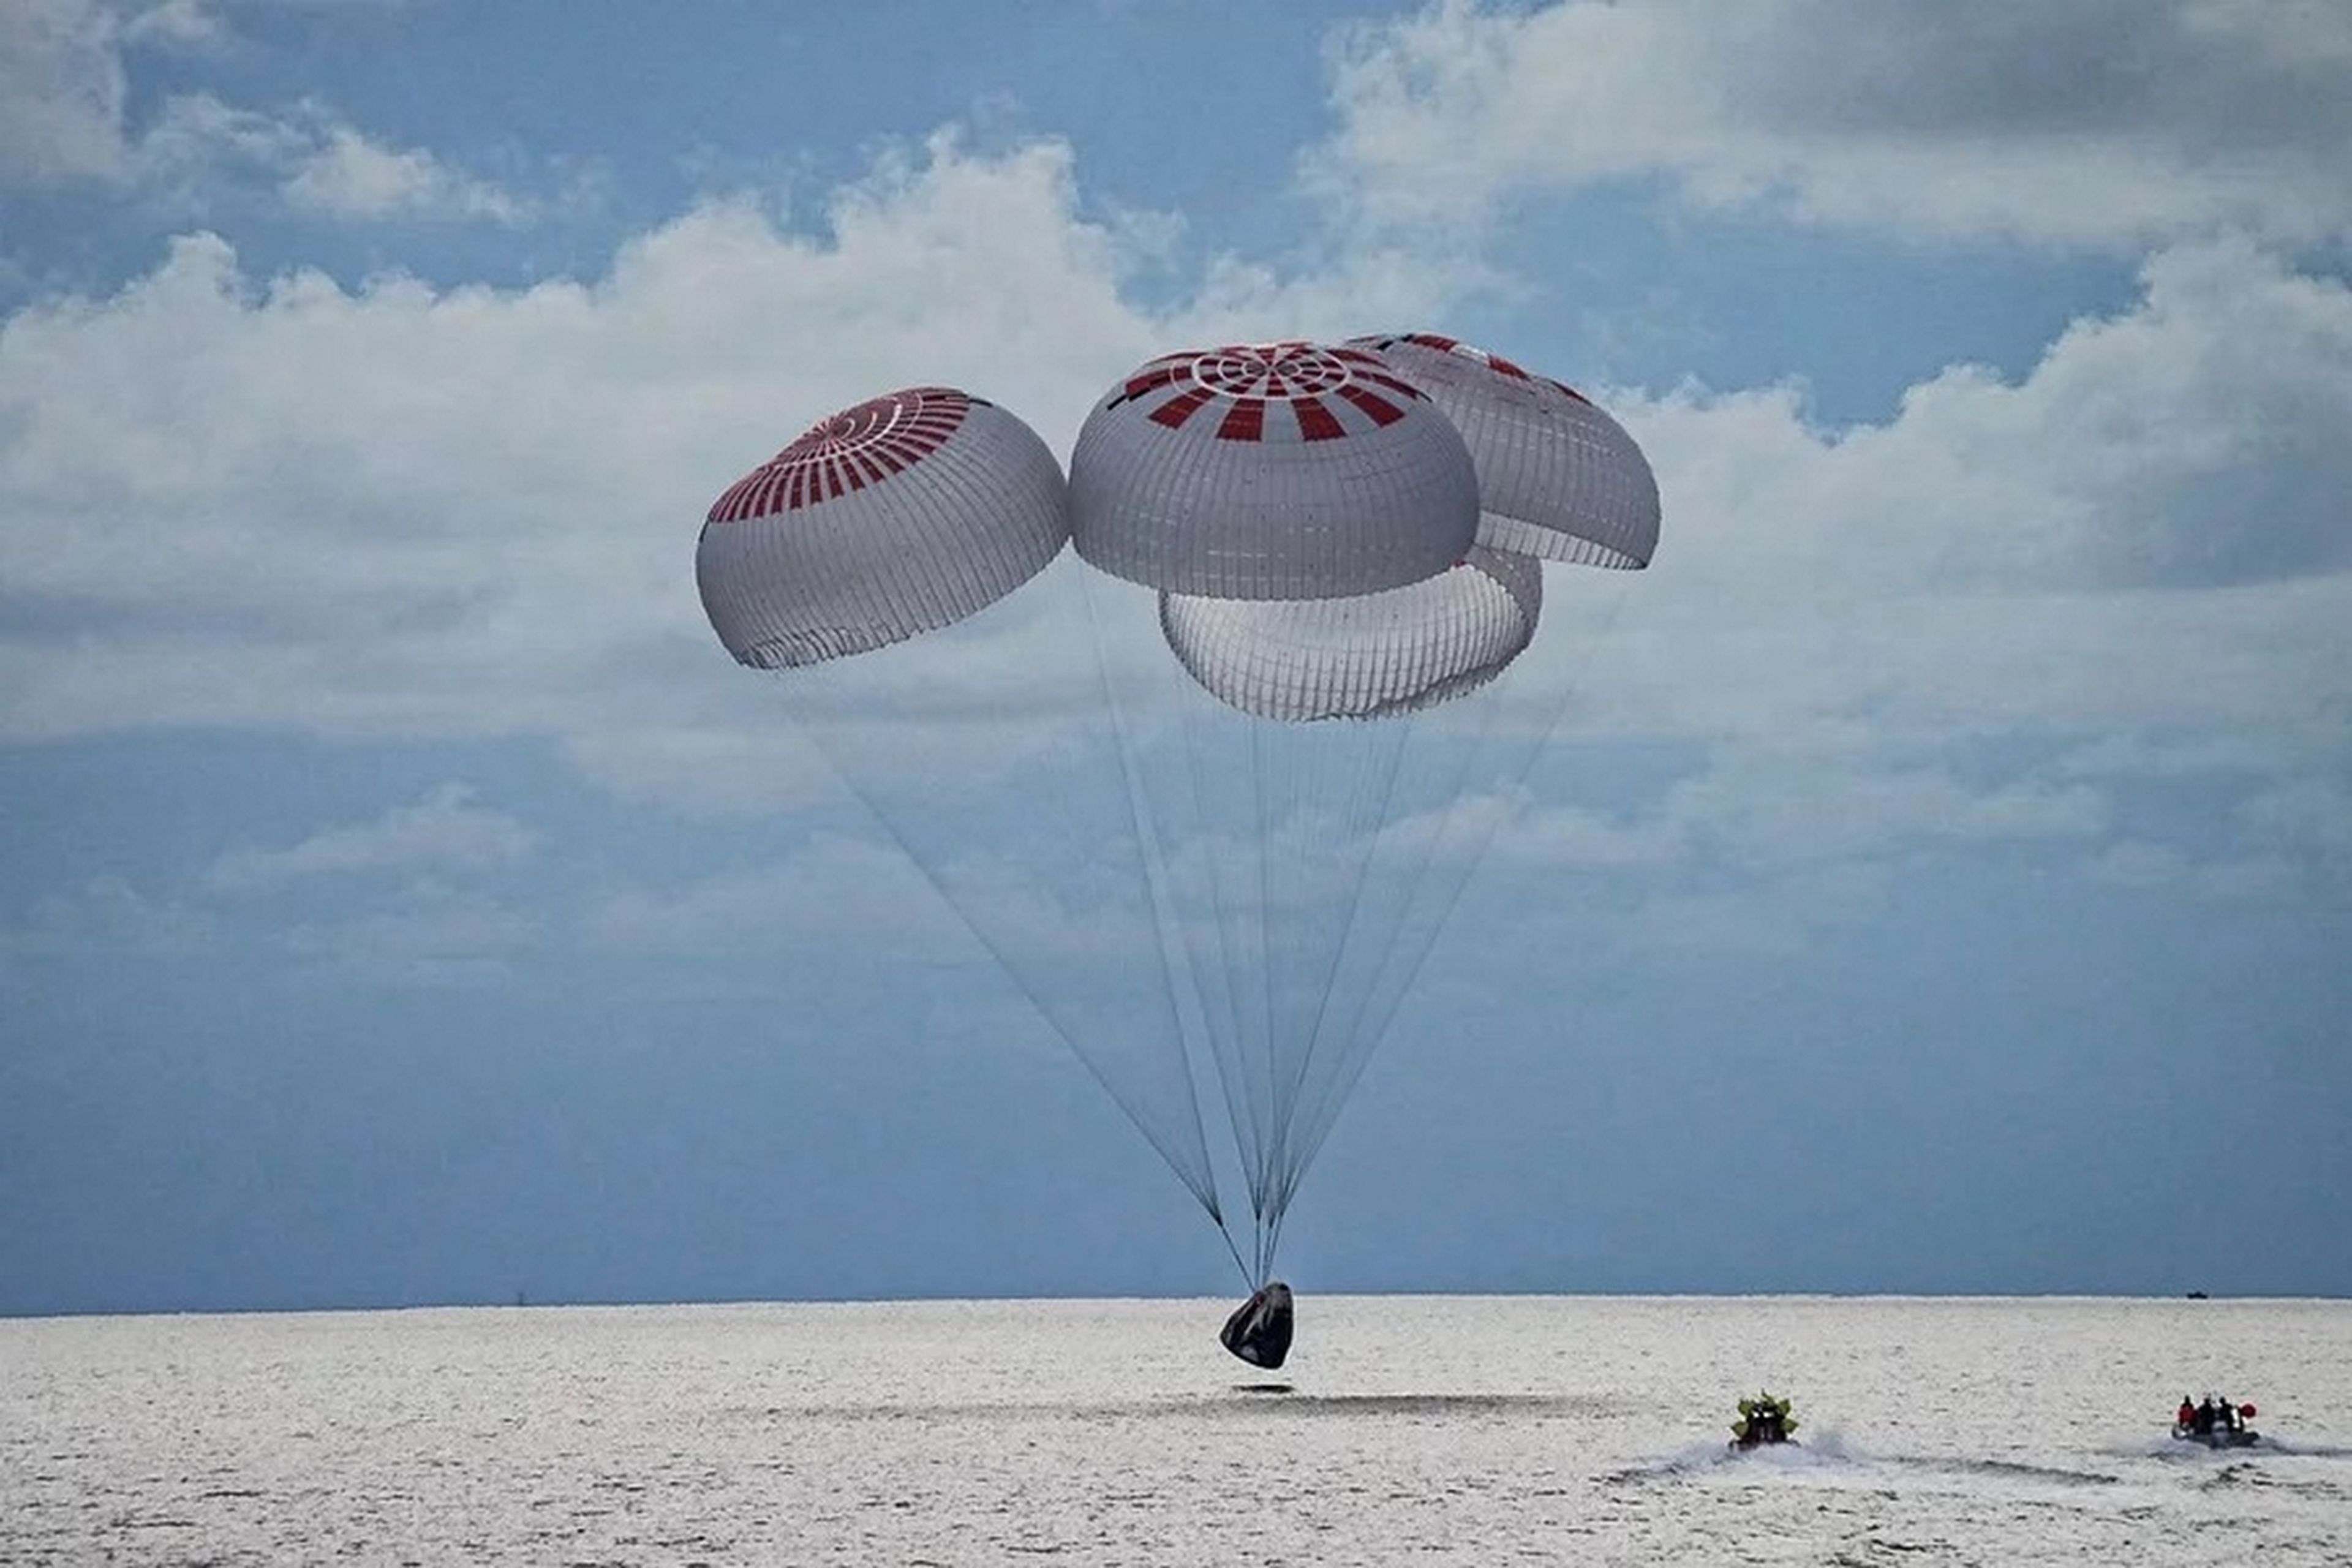 La misión tripulada solo por turistas espaciales de SpaceX regresa a la Tierra, tras pasar tres días en el espacio